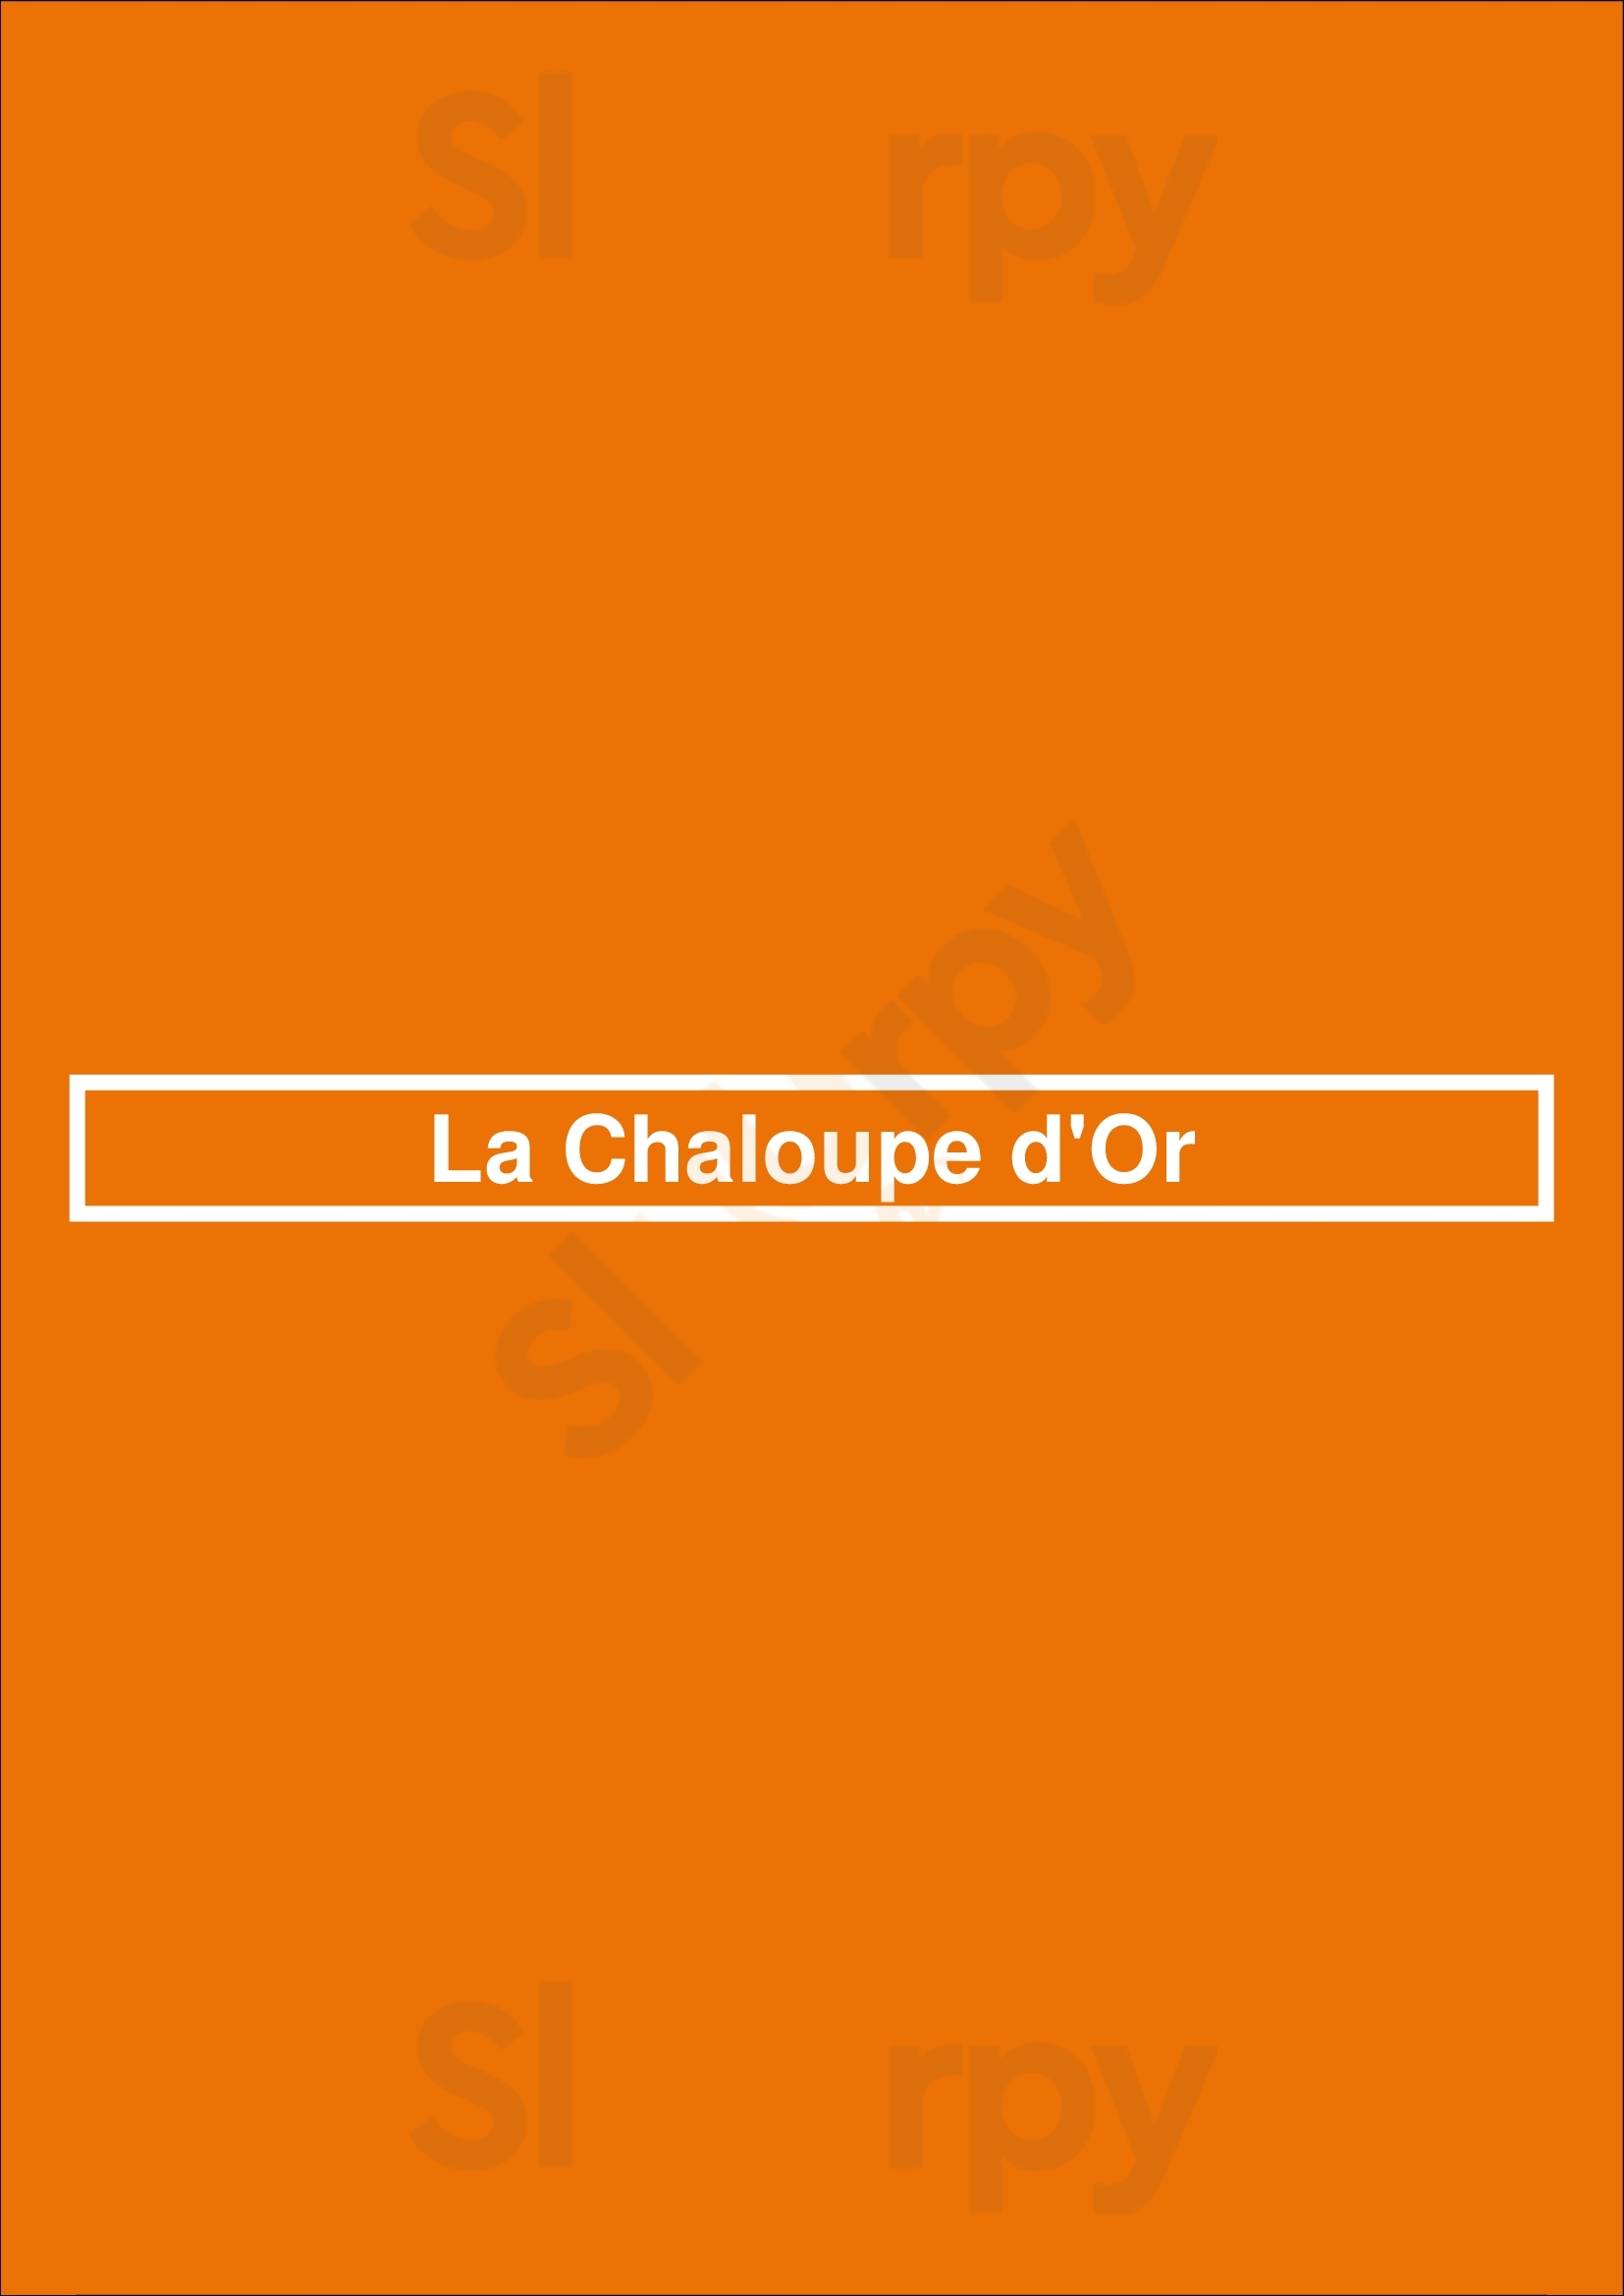 La Chaloupe D'or Bruxelles Menu - 1